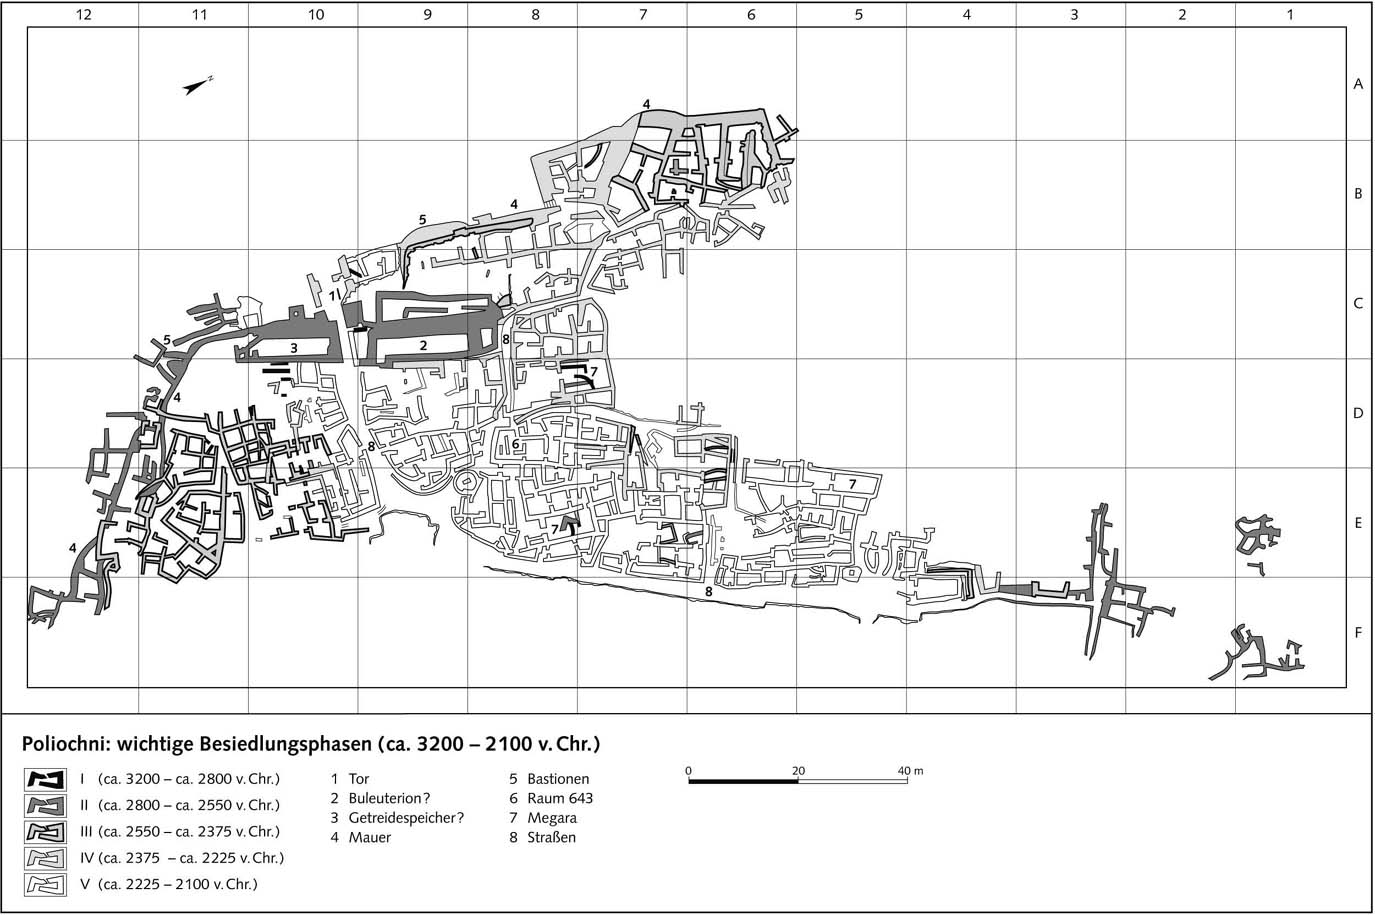 Полиохни: важнейшие стадии заселения (3200 - 2100 гг. до н.э.)